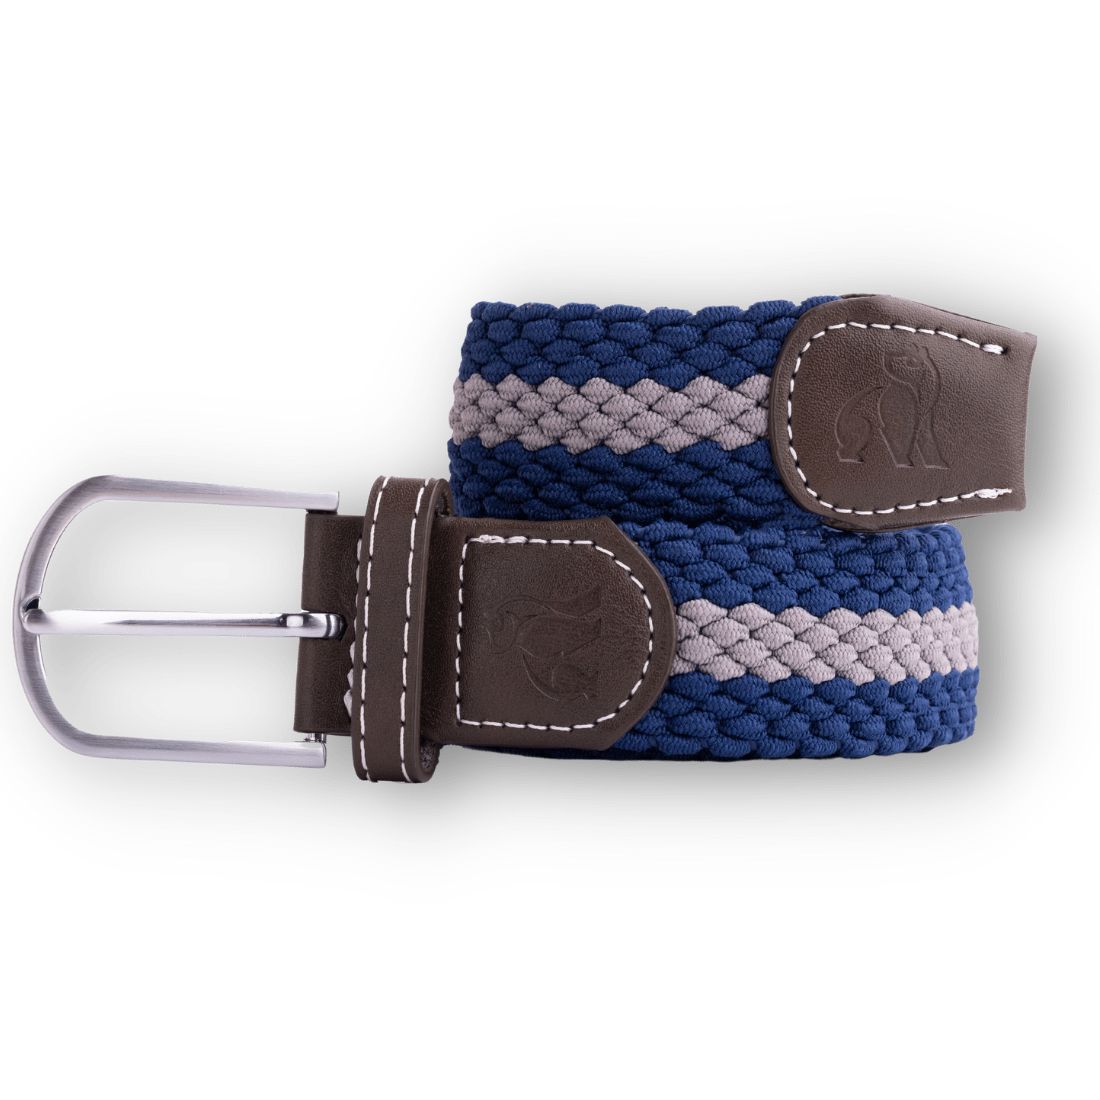 Woven Belt - Blue / Grey Stripe